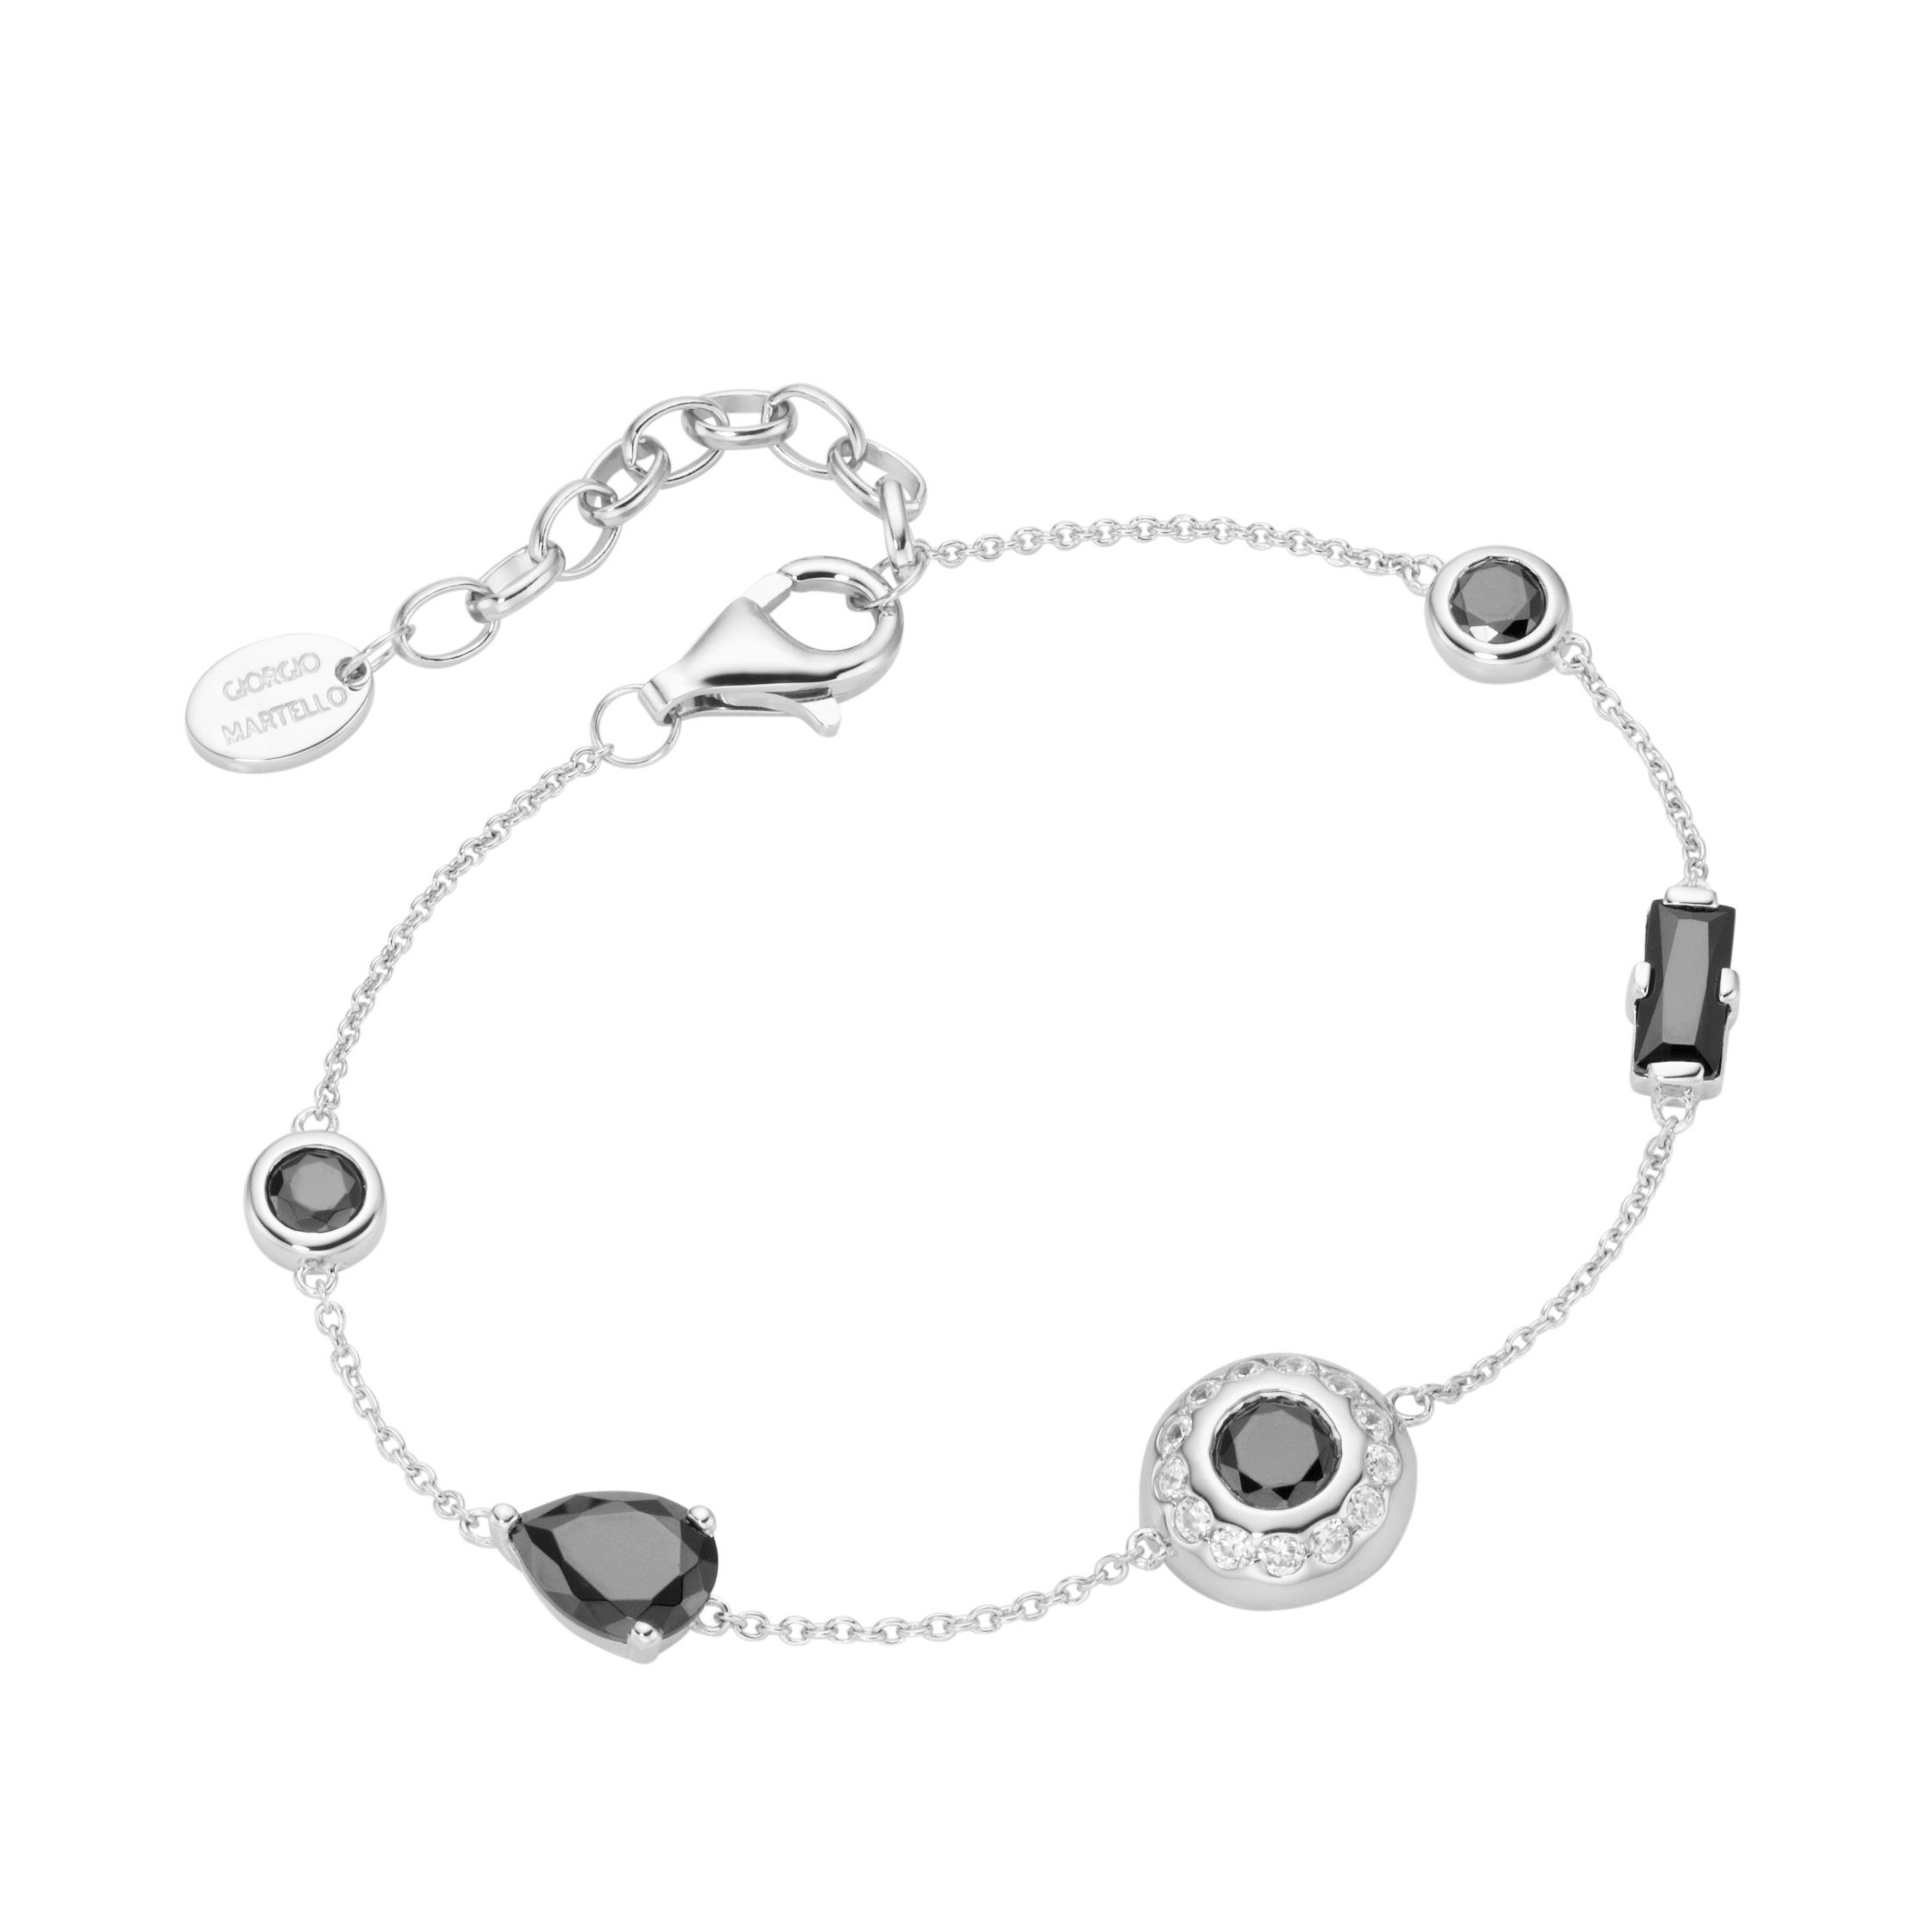 GIORGIO MARTELLO MILANO Armband verschiedene Zwischenteile, Zirkonia schwarz + weiß, Silber 925 | Silberarmbänder